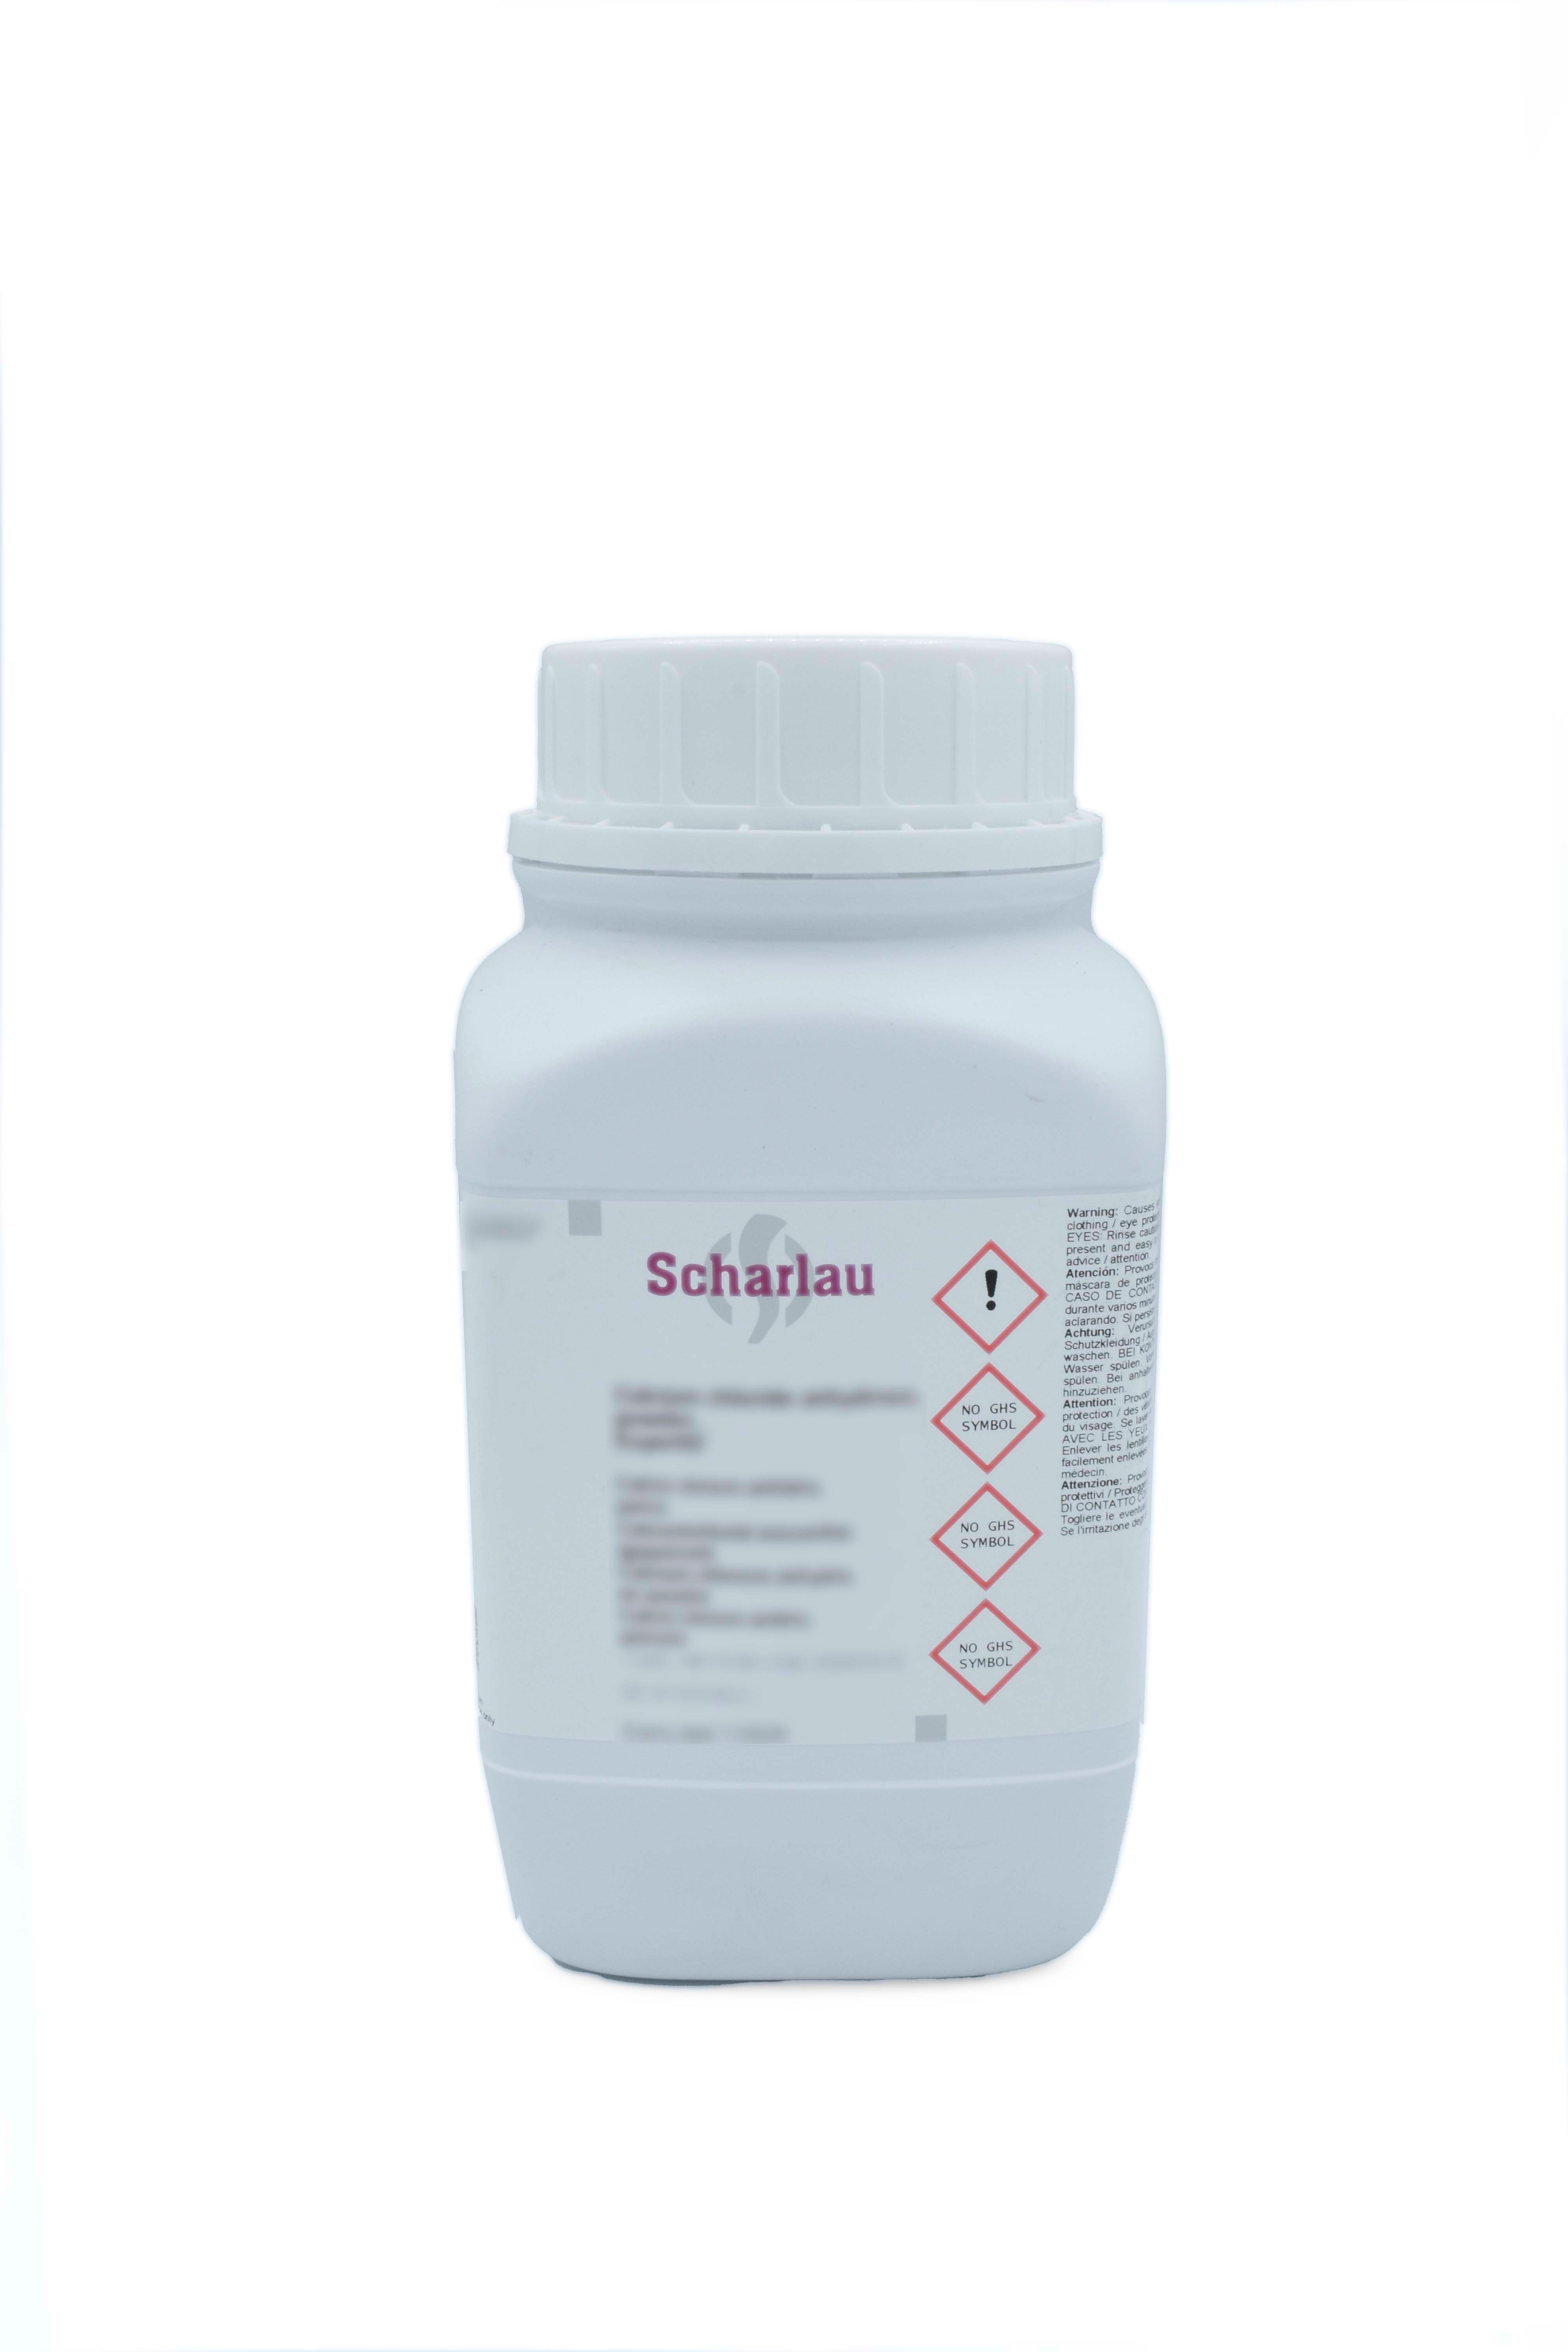 D(+)-Glucosa monohidrato, Pharmpur®, Ph Eur, BP, USP